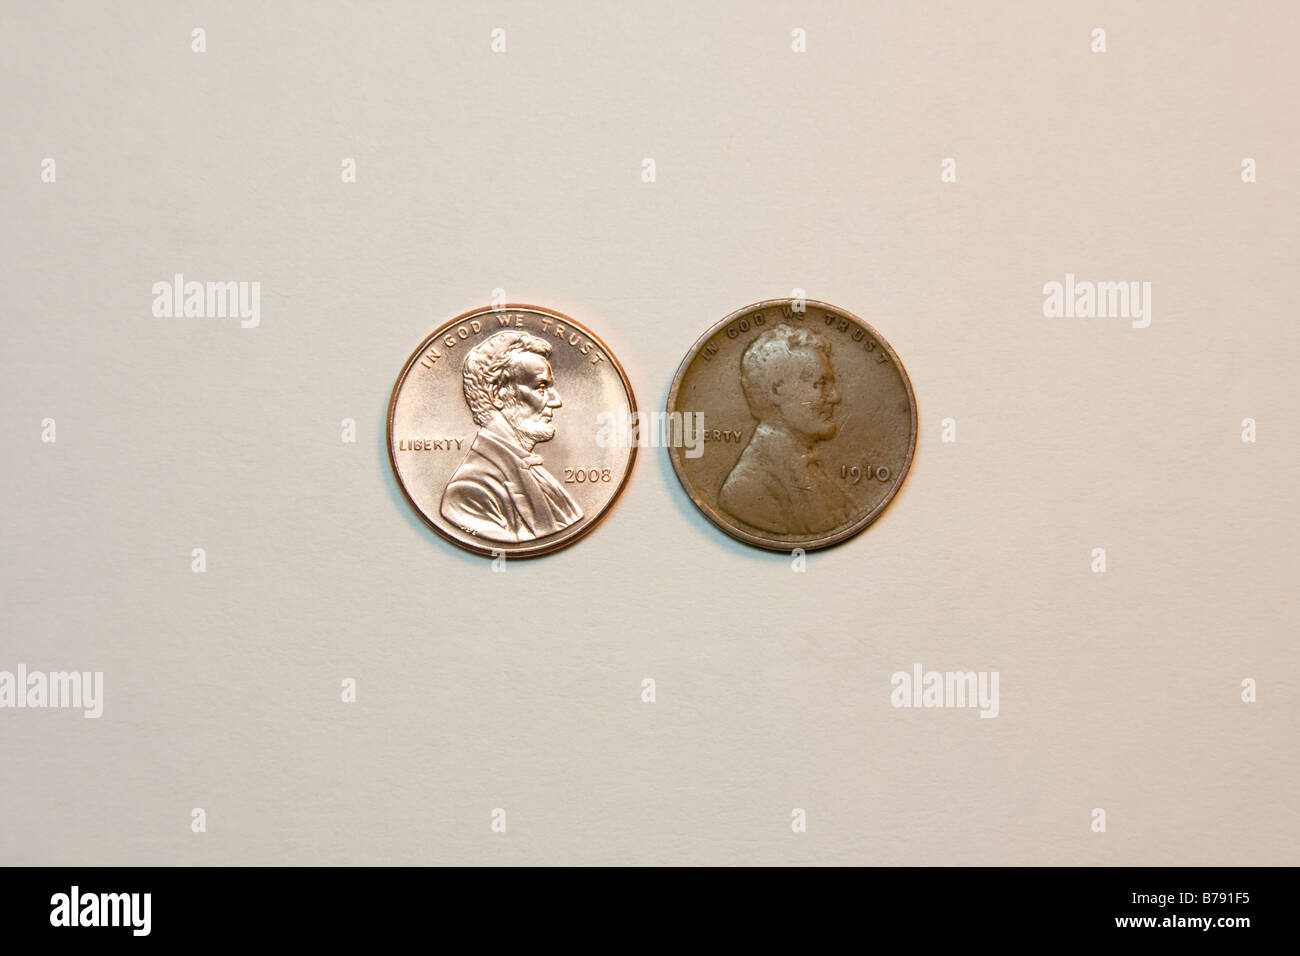 Moneda de Estados Unidos. 2008 penny junto a un 1910 "trigo" penny. Foto de stock